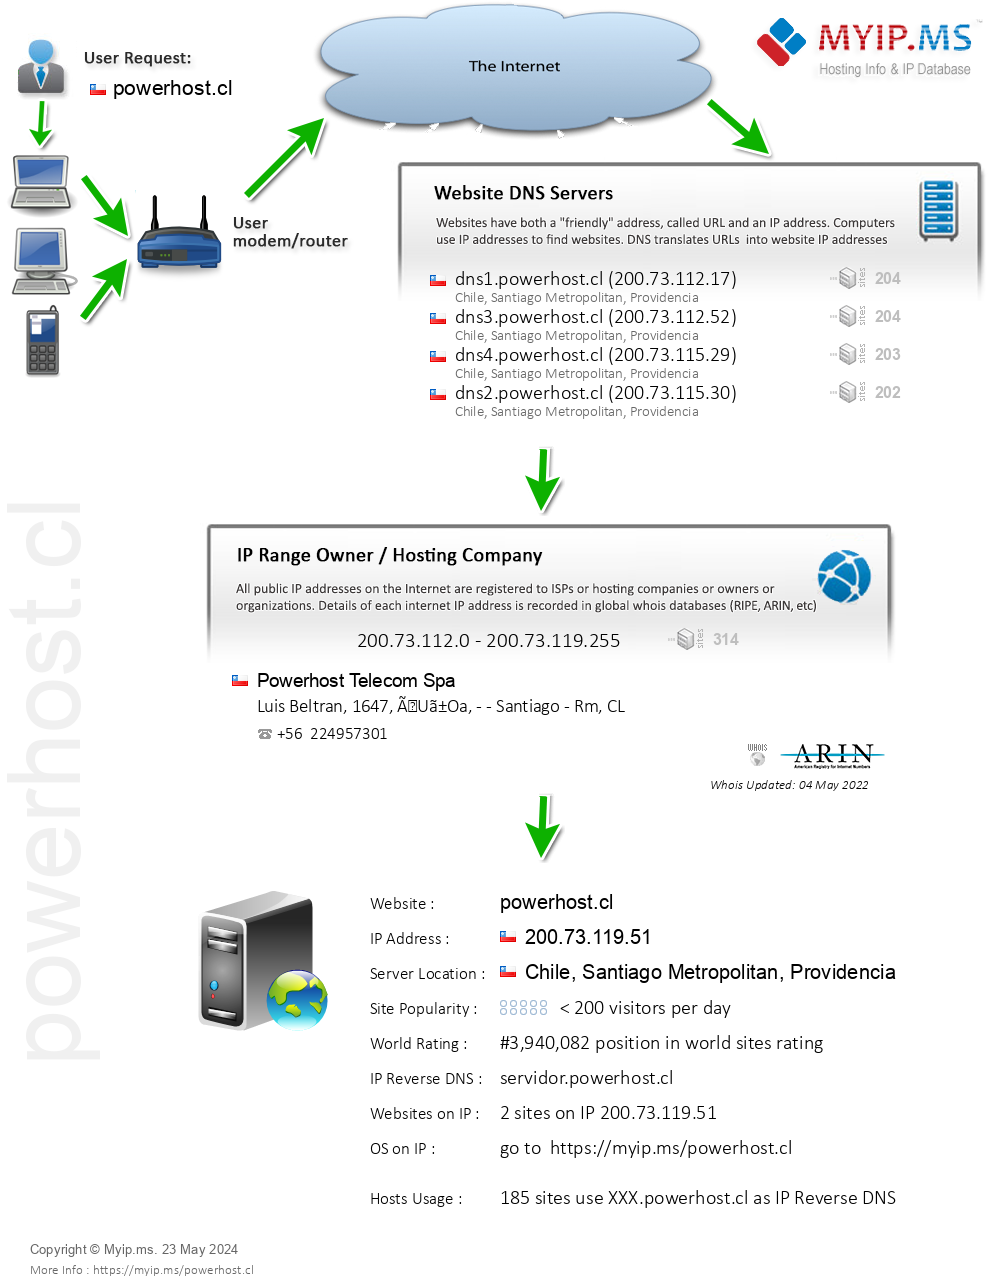 Powerhost.cl - Website Hosting Visual IP Diagram